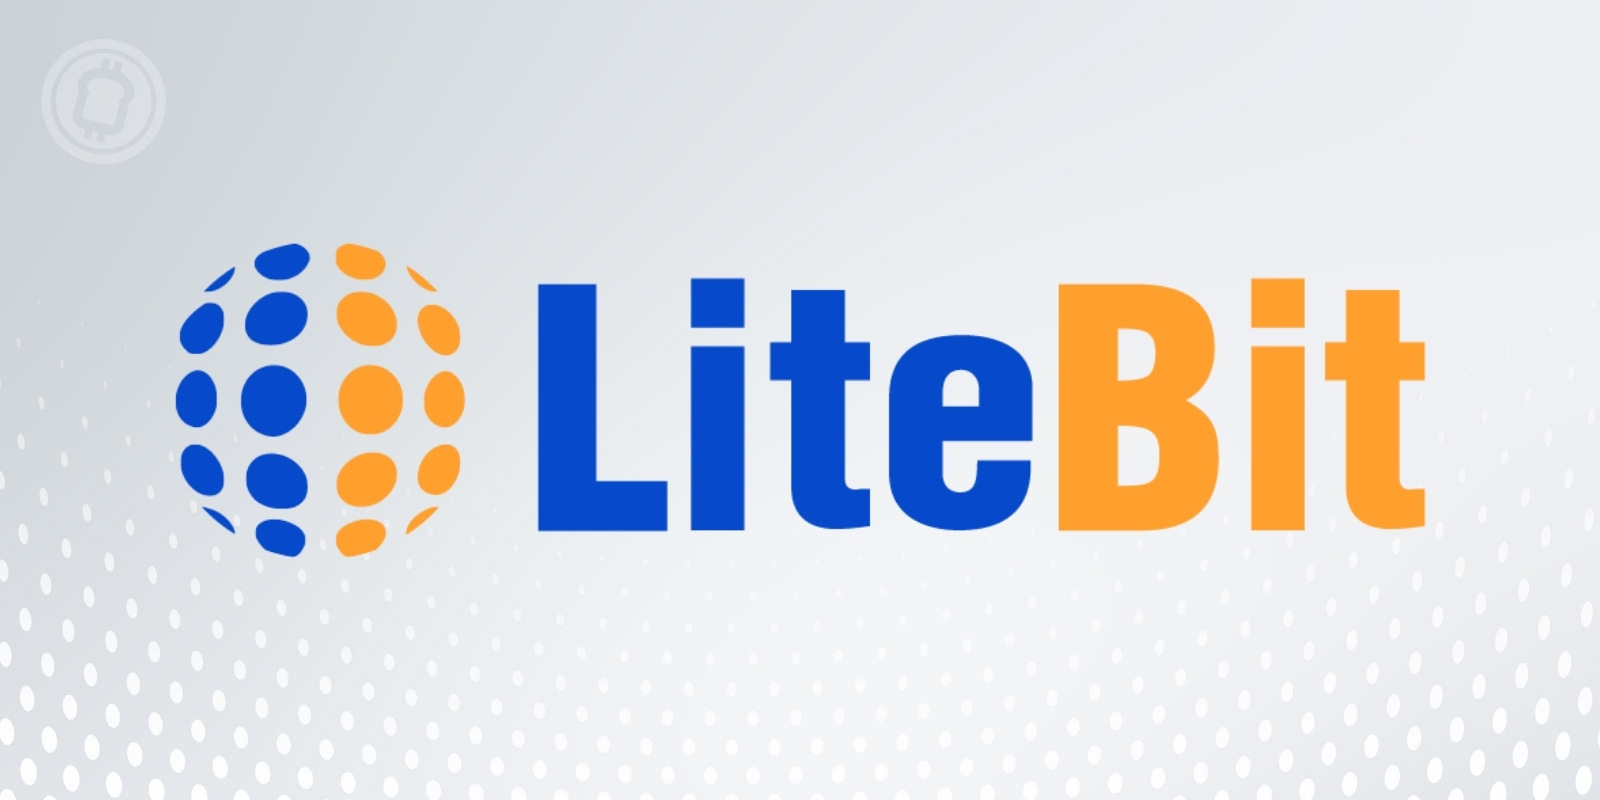 Tutoriel de LiteBit (LBC), une plateforme simple et sécurisée pour vos cryptomonnaies